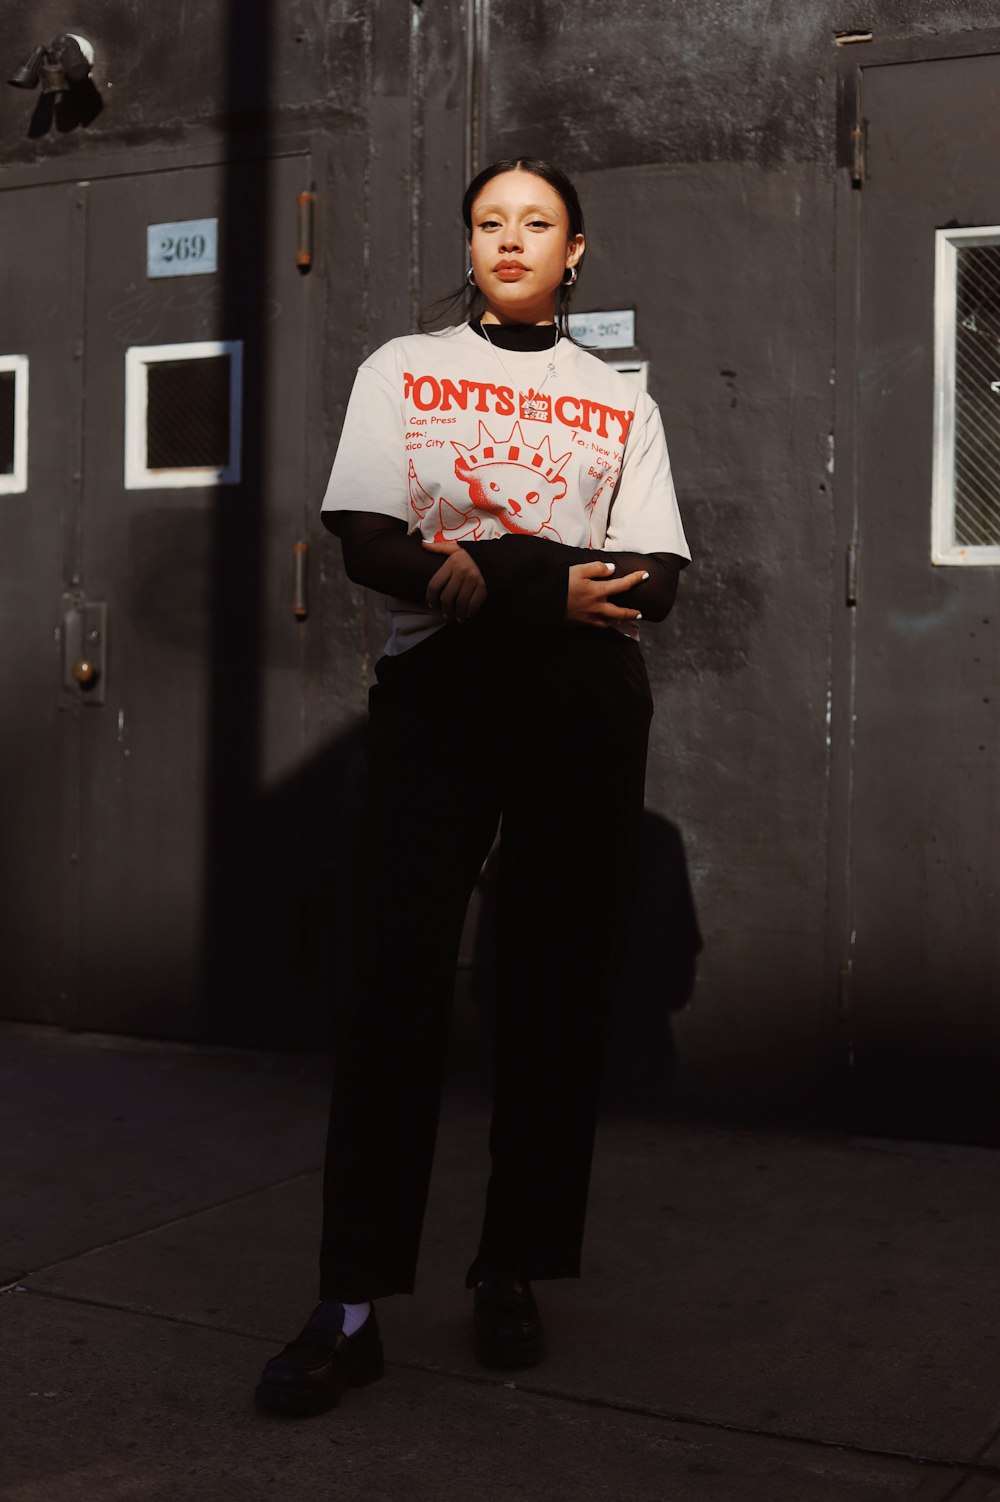 a woman standing in front of a metal door